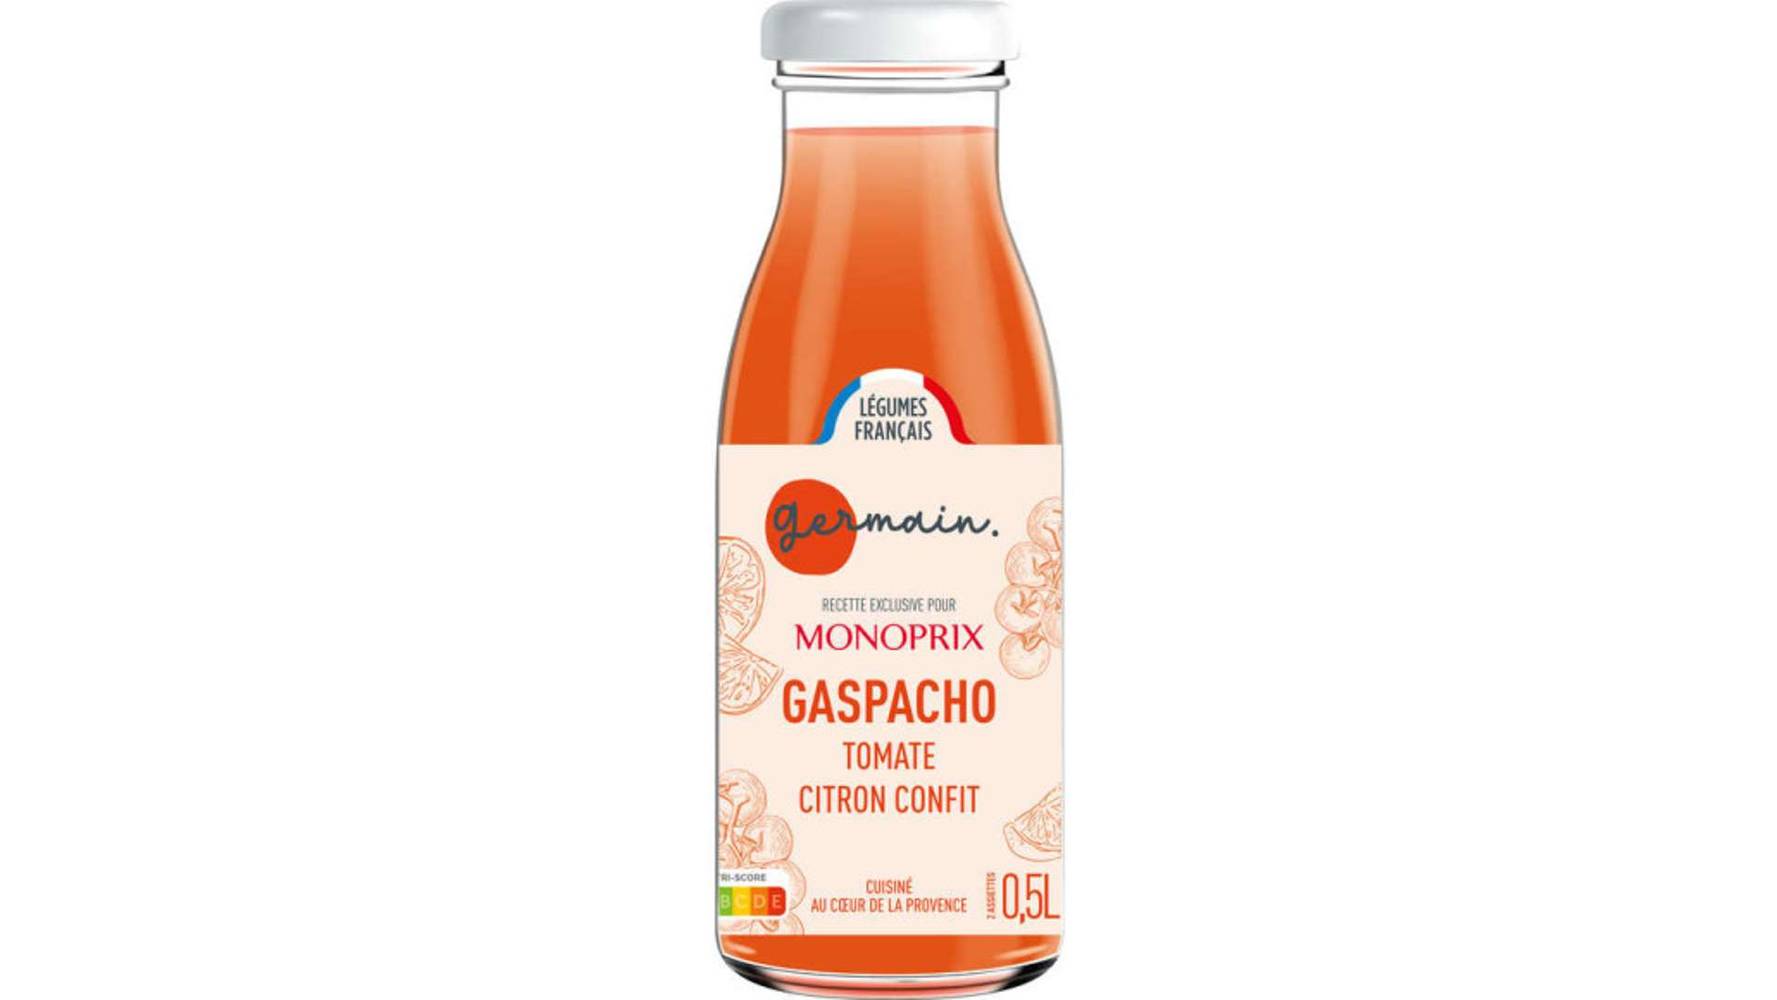 Monoprix - Germain gaspacho (tomate - citron confit)